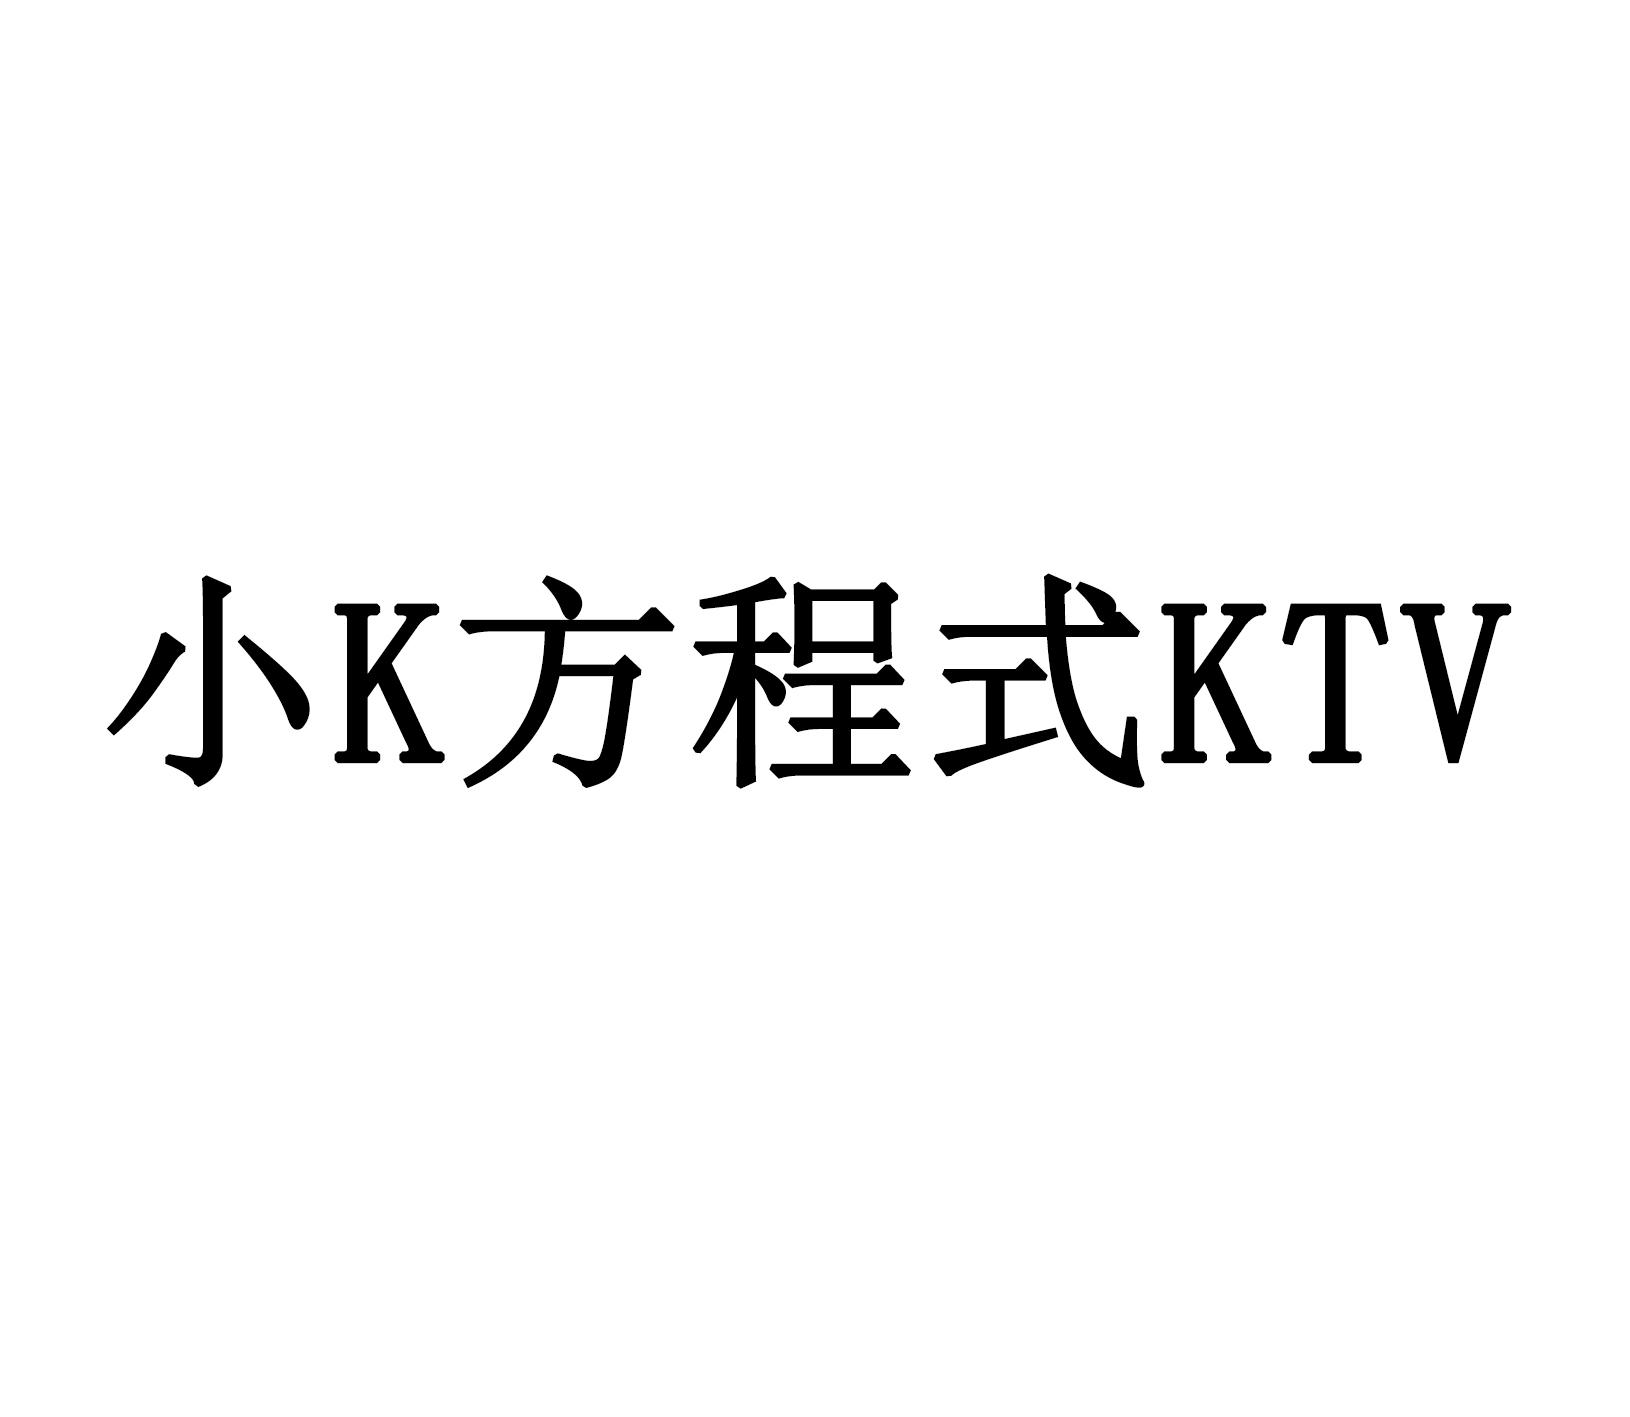 小K方程式KTV 商标公告